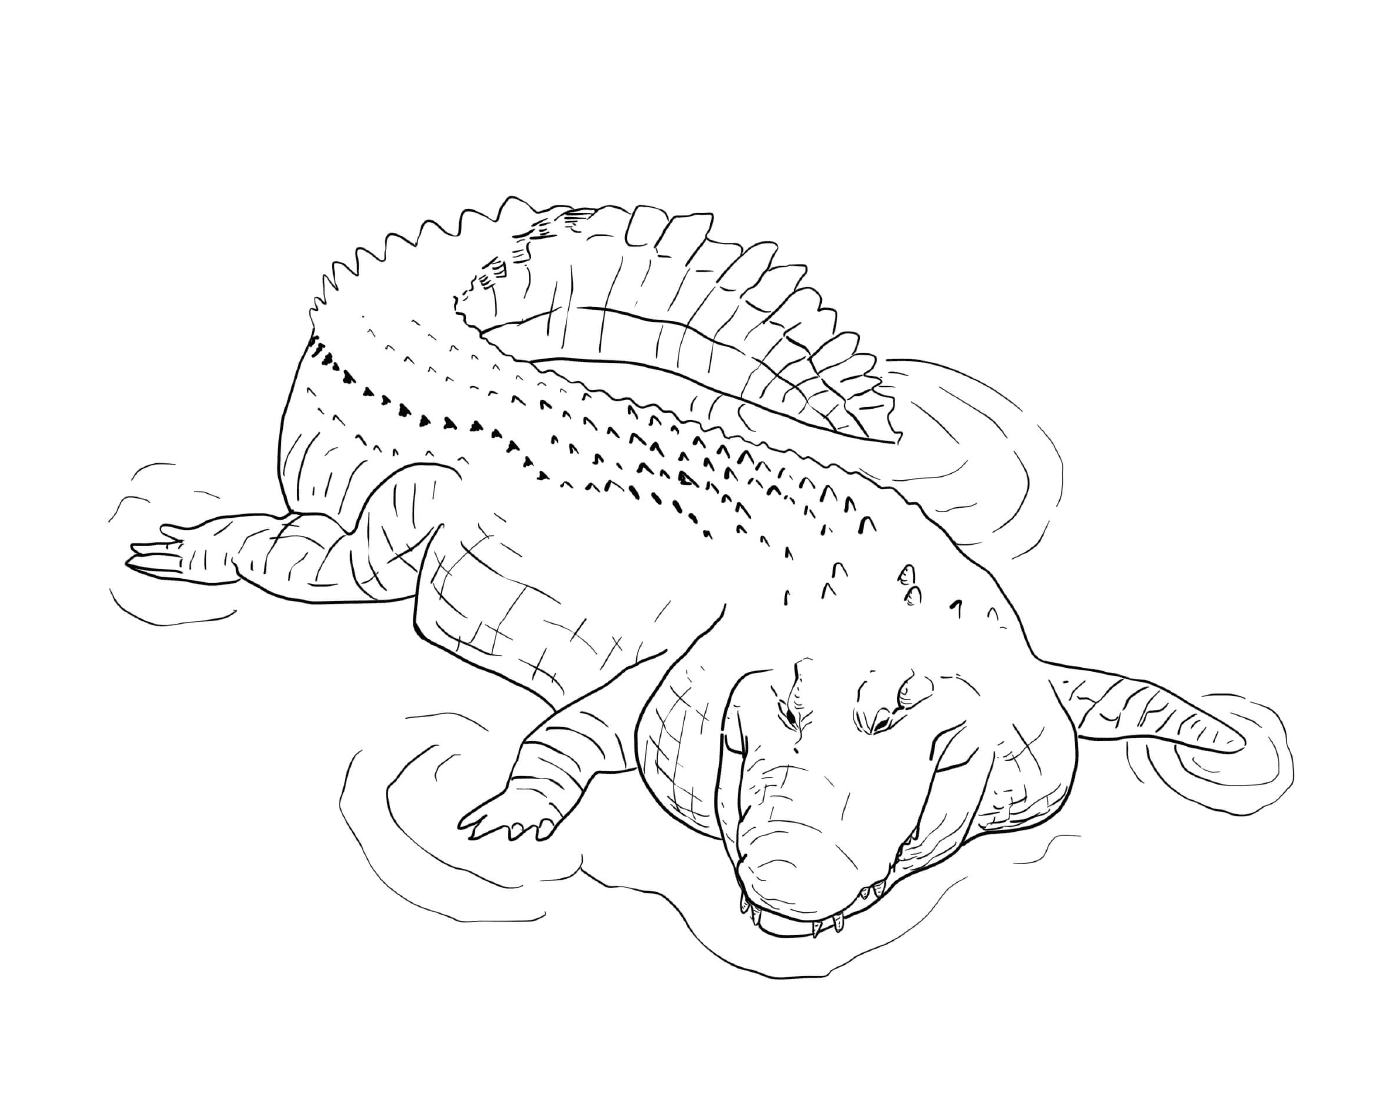  Морской крокодил из Индо-тихоокеанского бассейна, лежащий в воде 